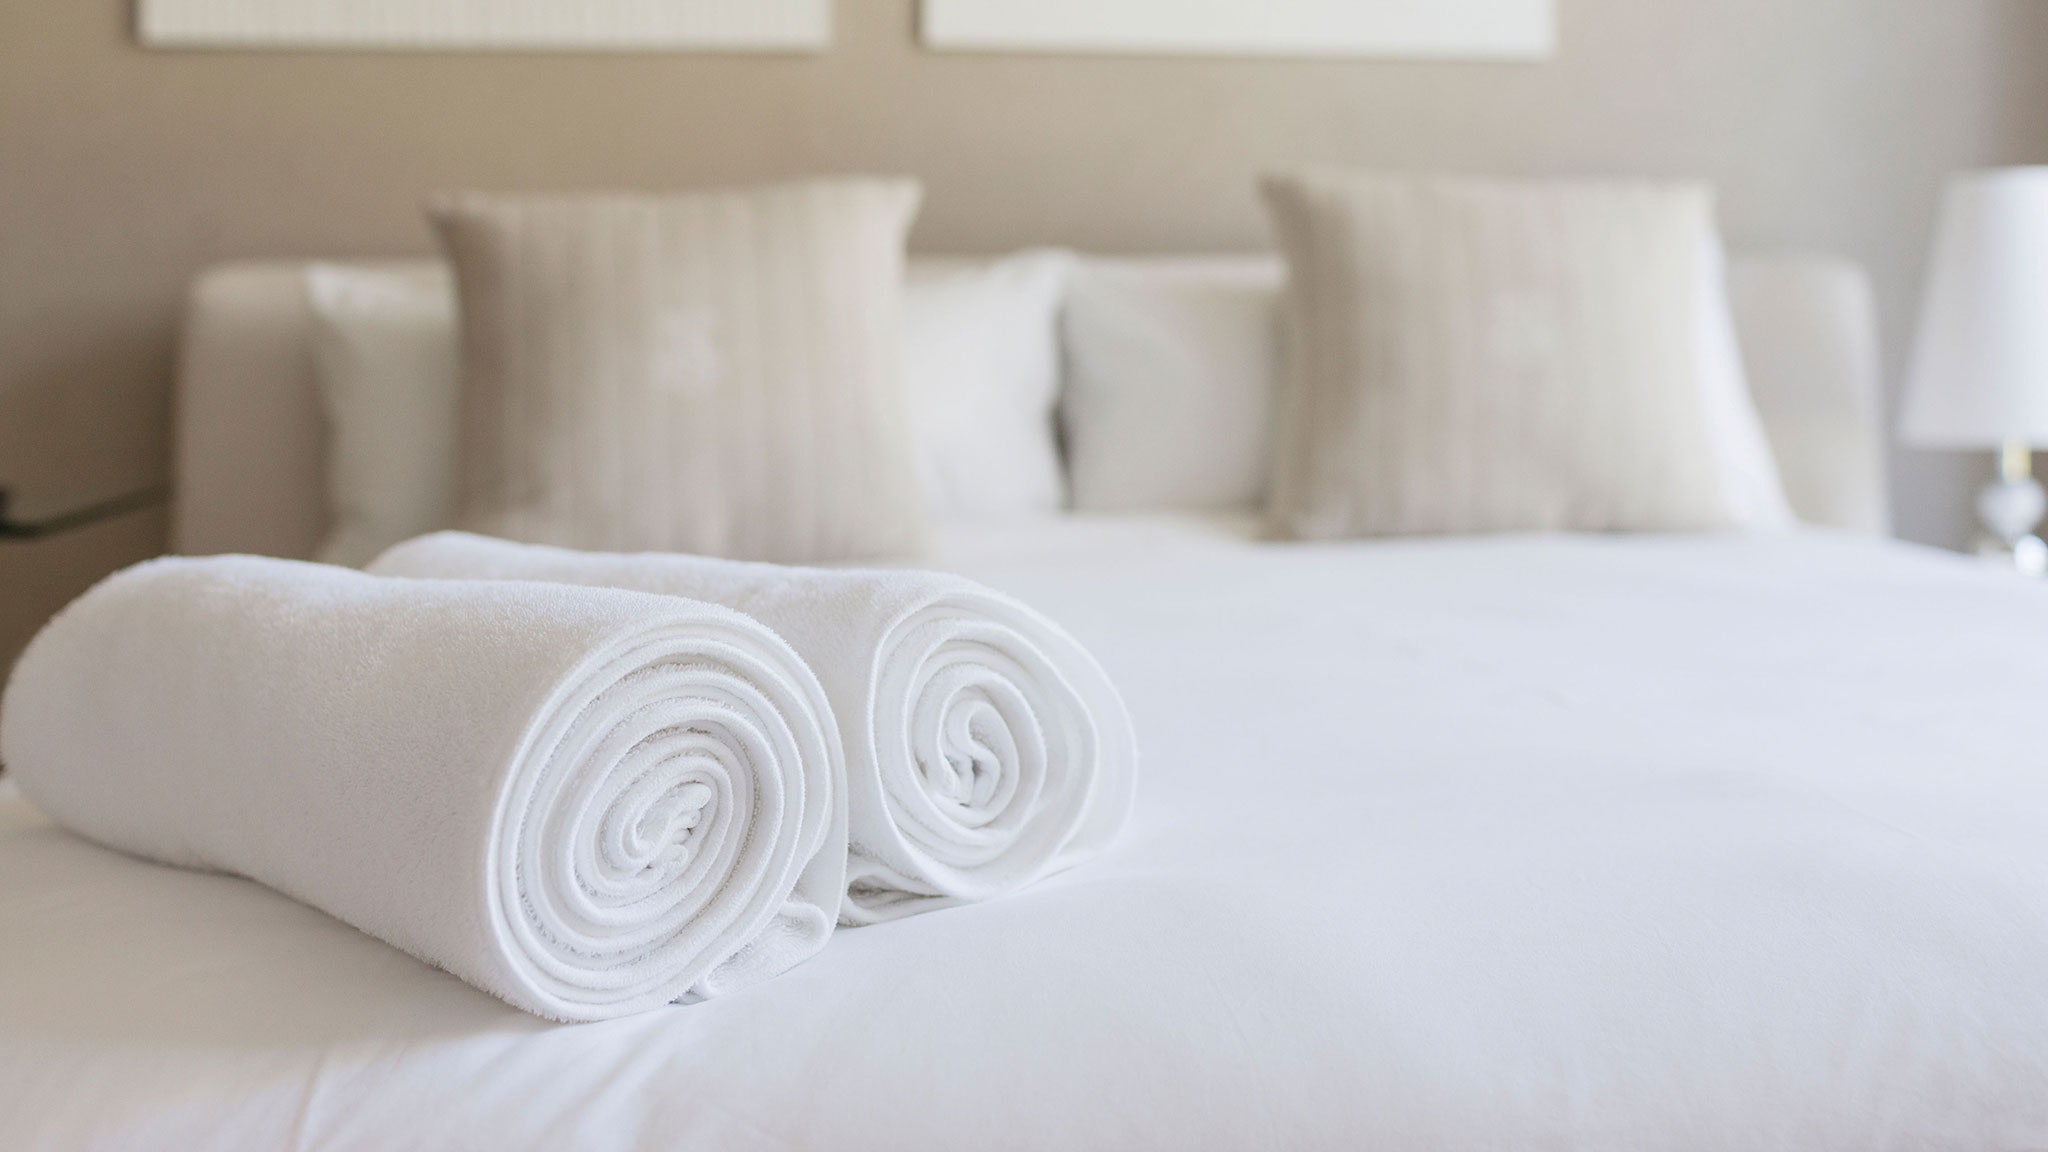 https://whiteglovelaundry.com/wp-content/uploads/2022/03/towels-in-hotel-room.jpg